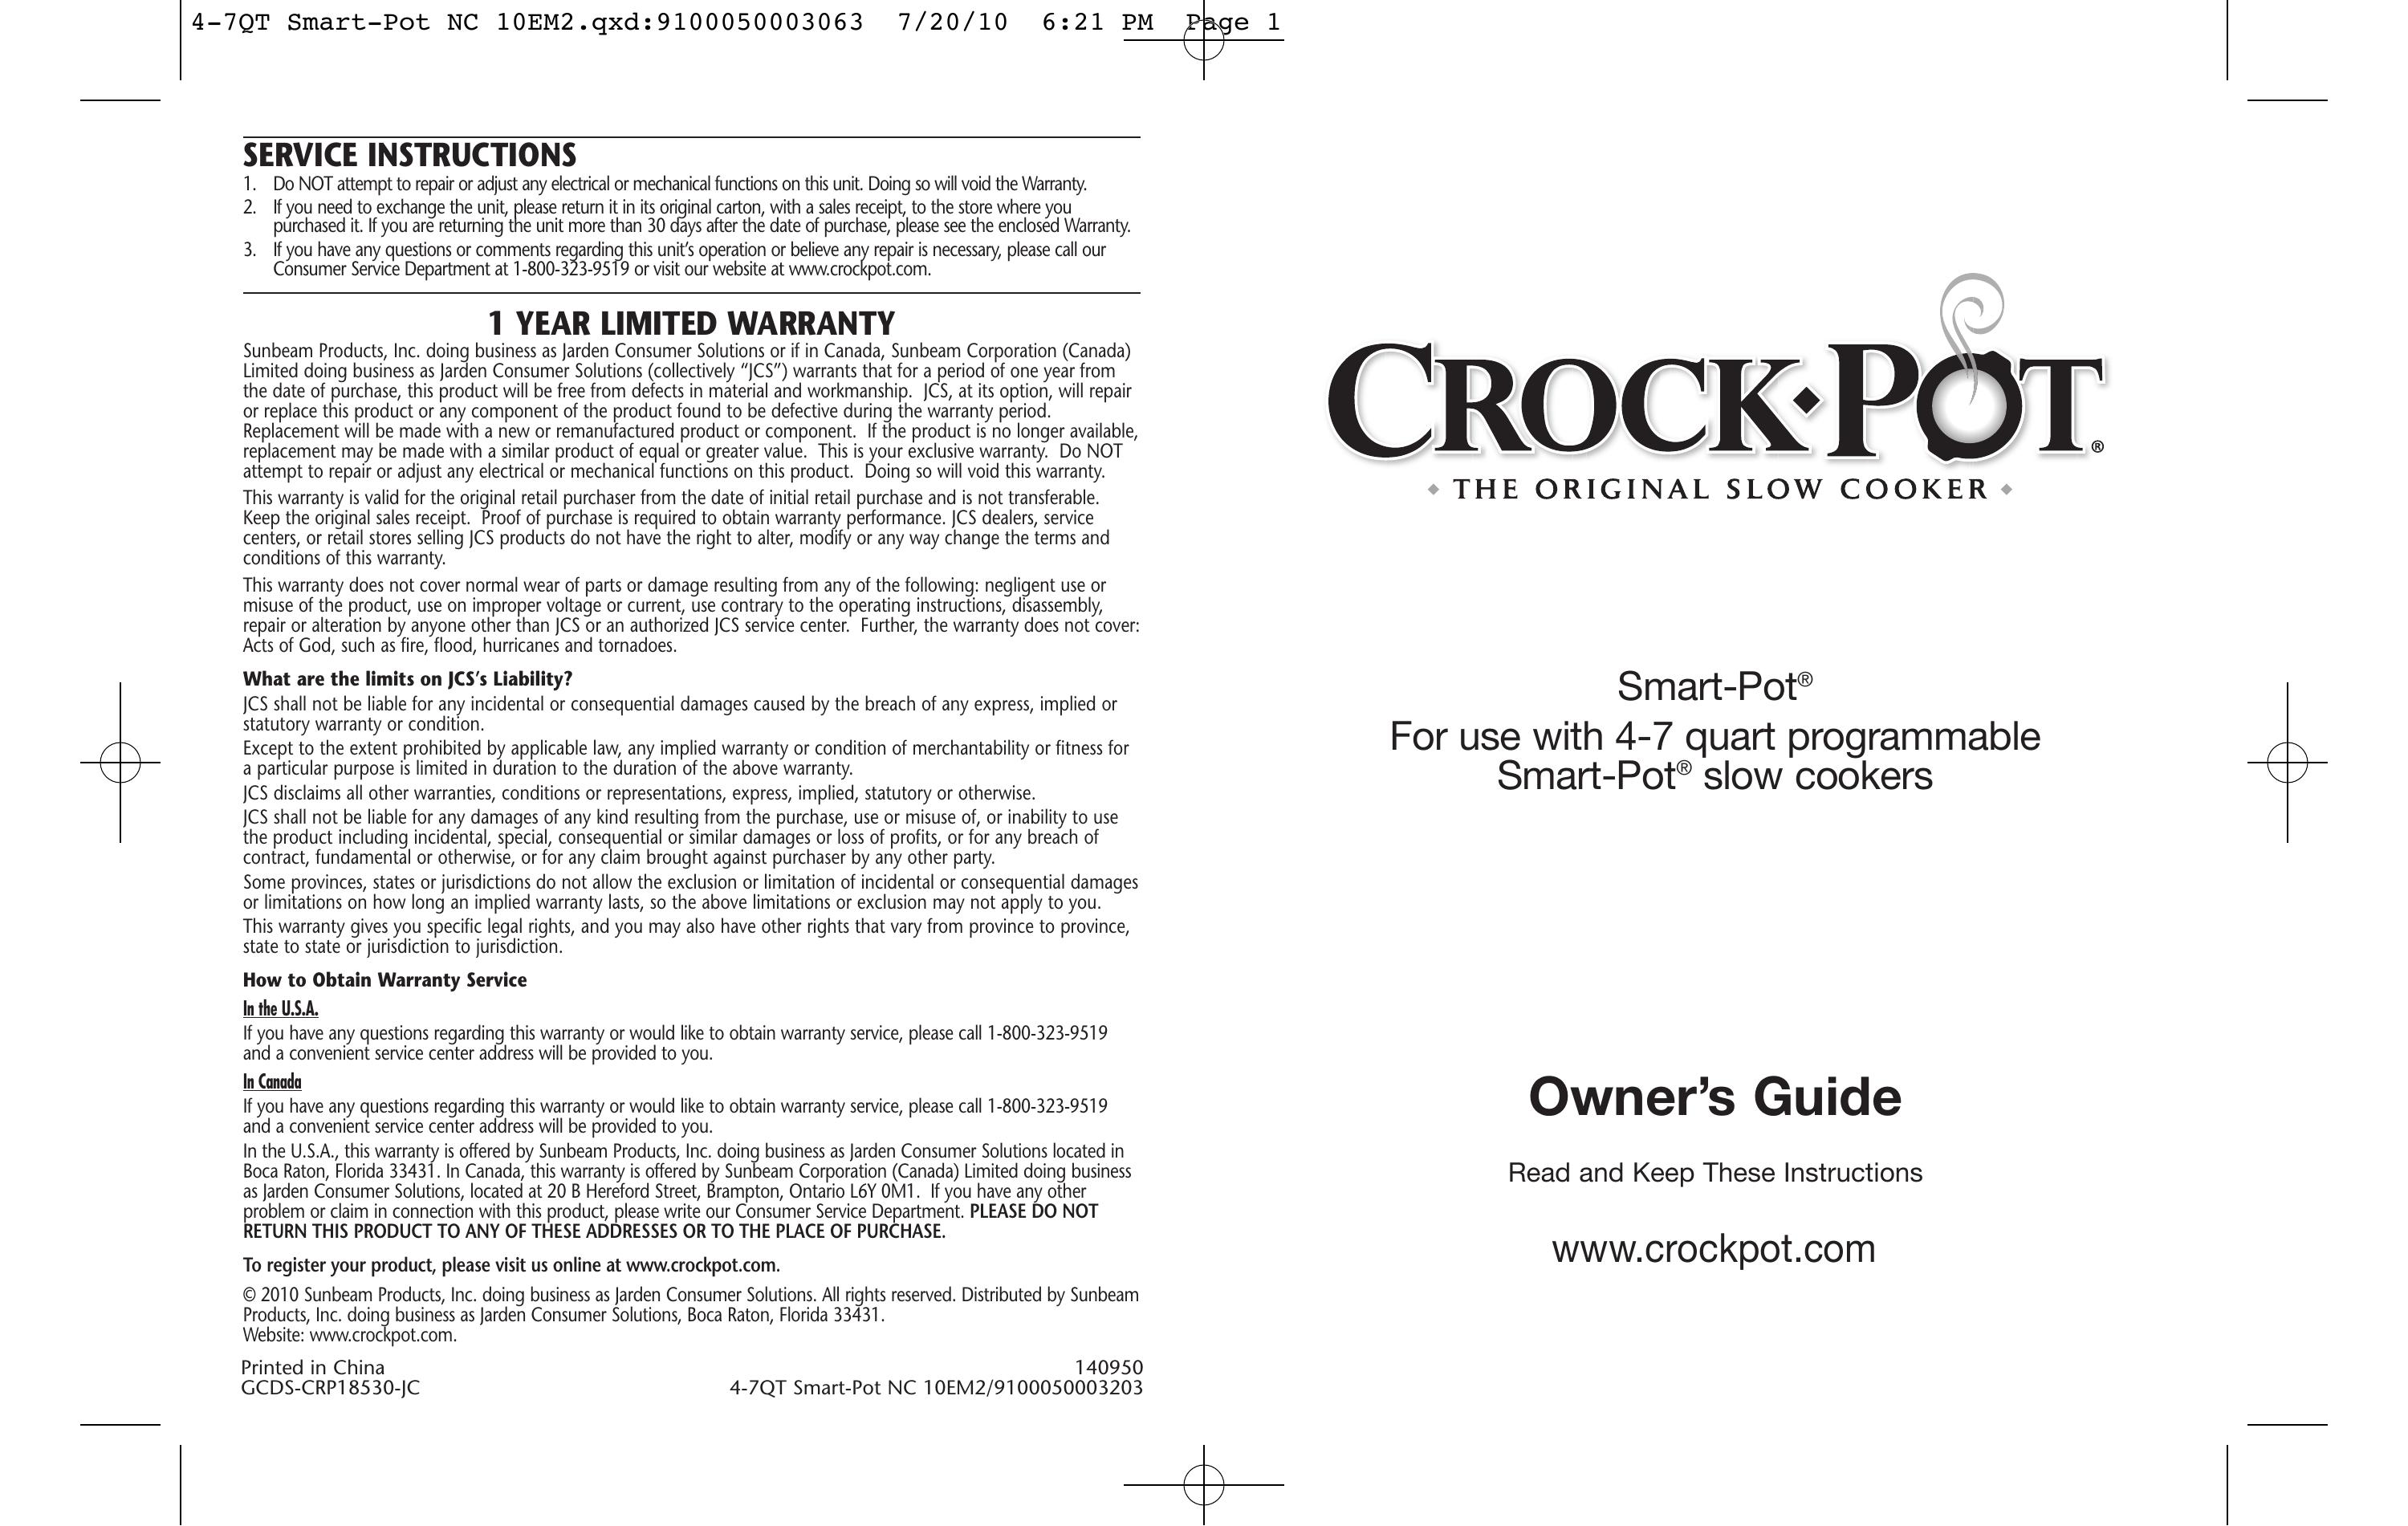 Crock-Pot 4-7QT Slow Cooker User Manual